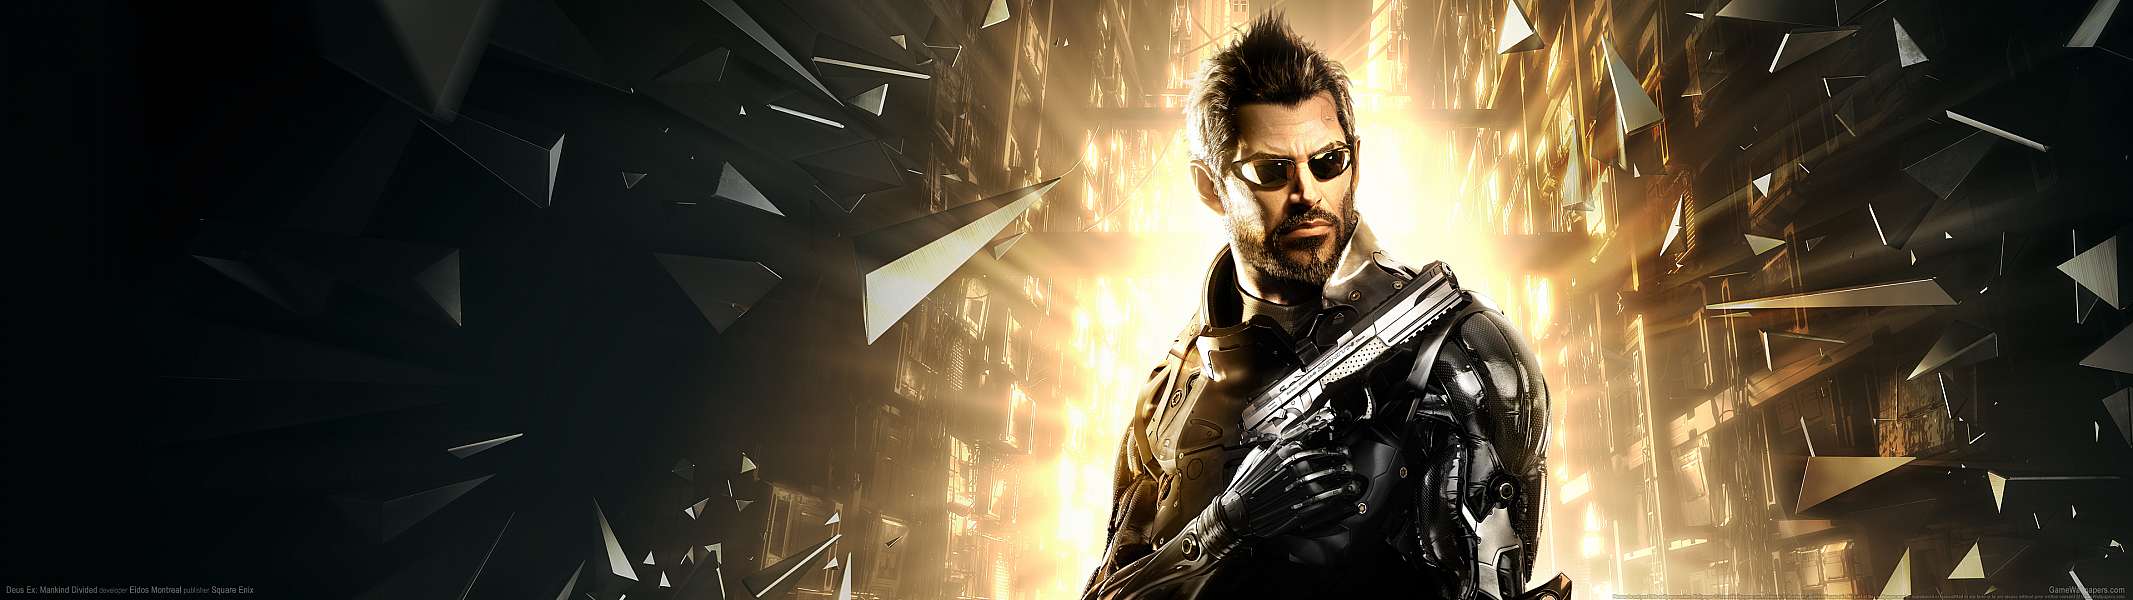 Deus Ex: Mankind Divided dual screen achtergrond